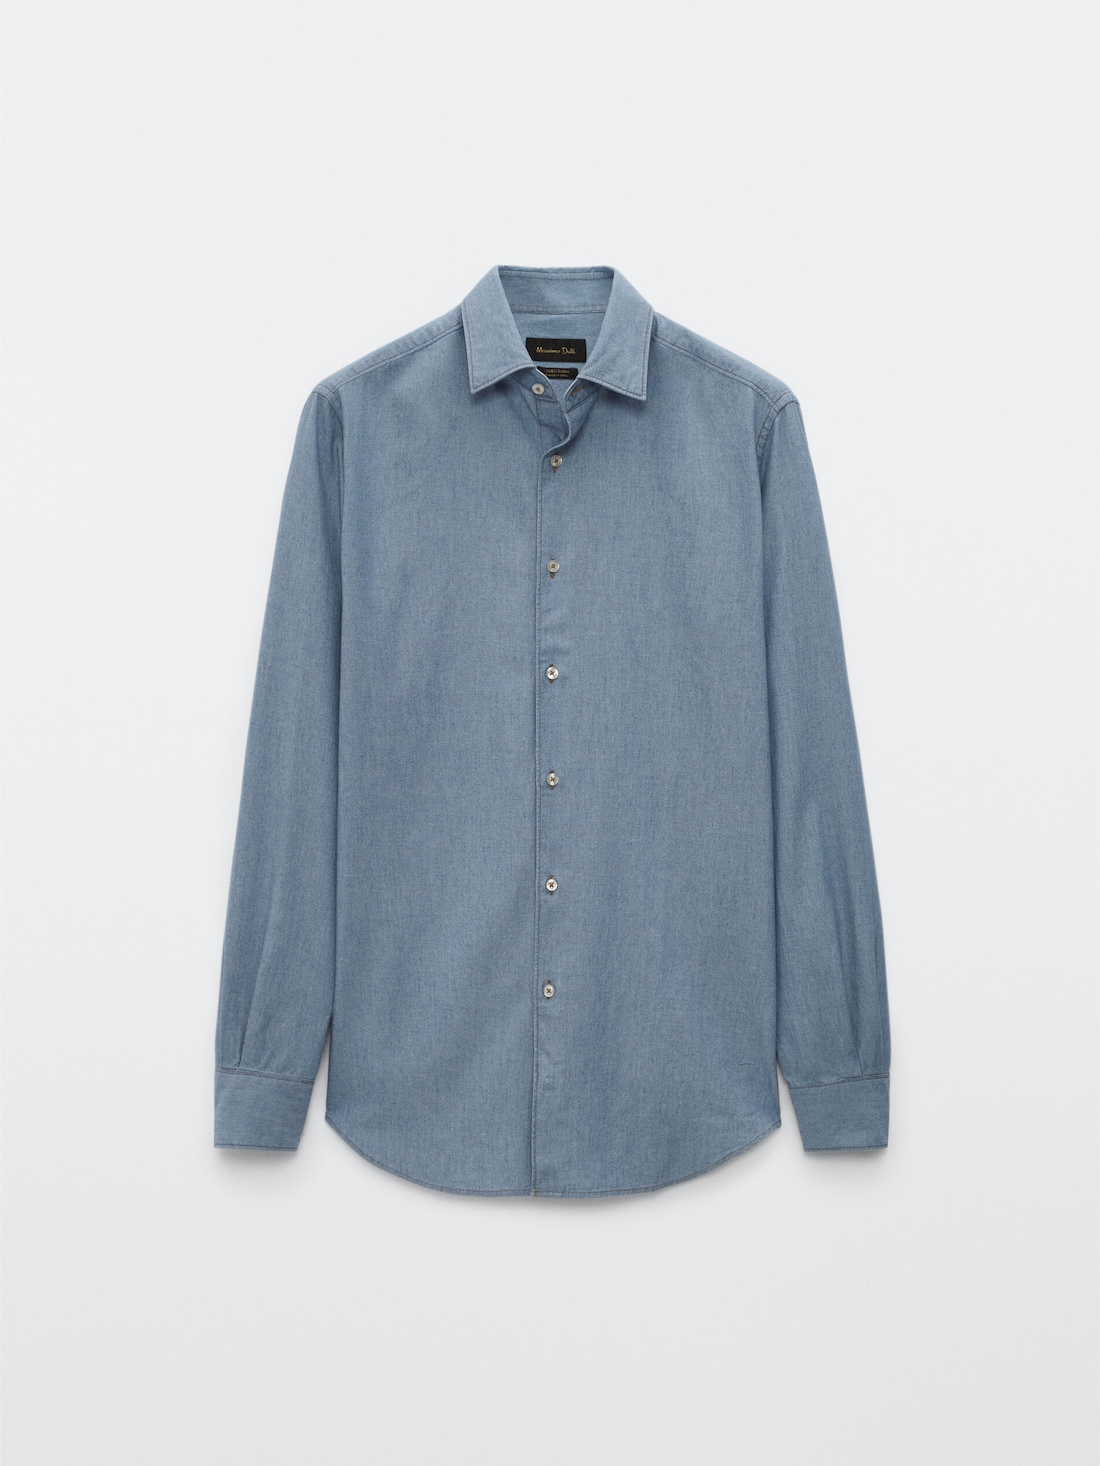 Джинсовая рубашка облегающего кроя из 100% хлопка ГОЛУБОЙ Massimo Dutti